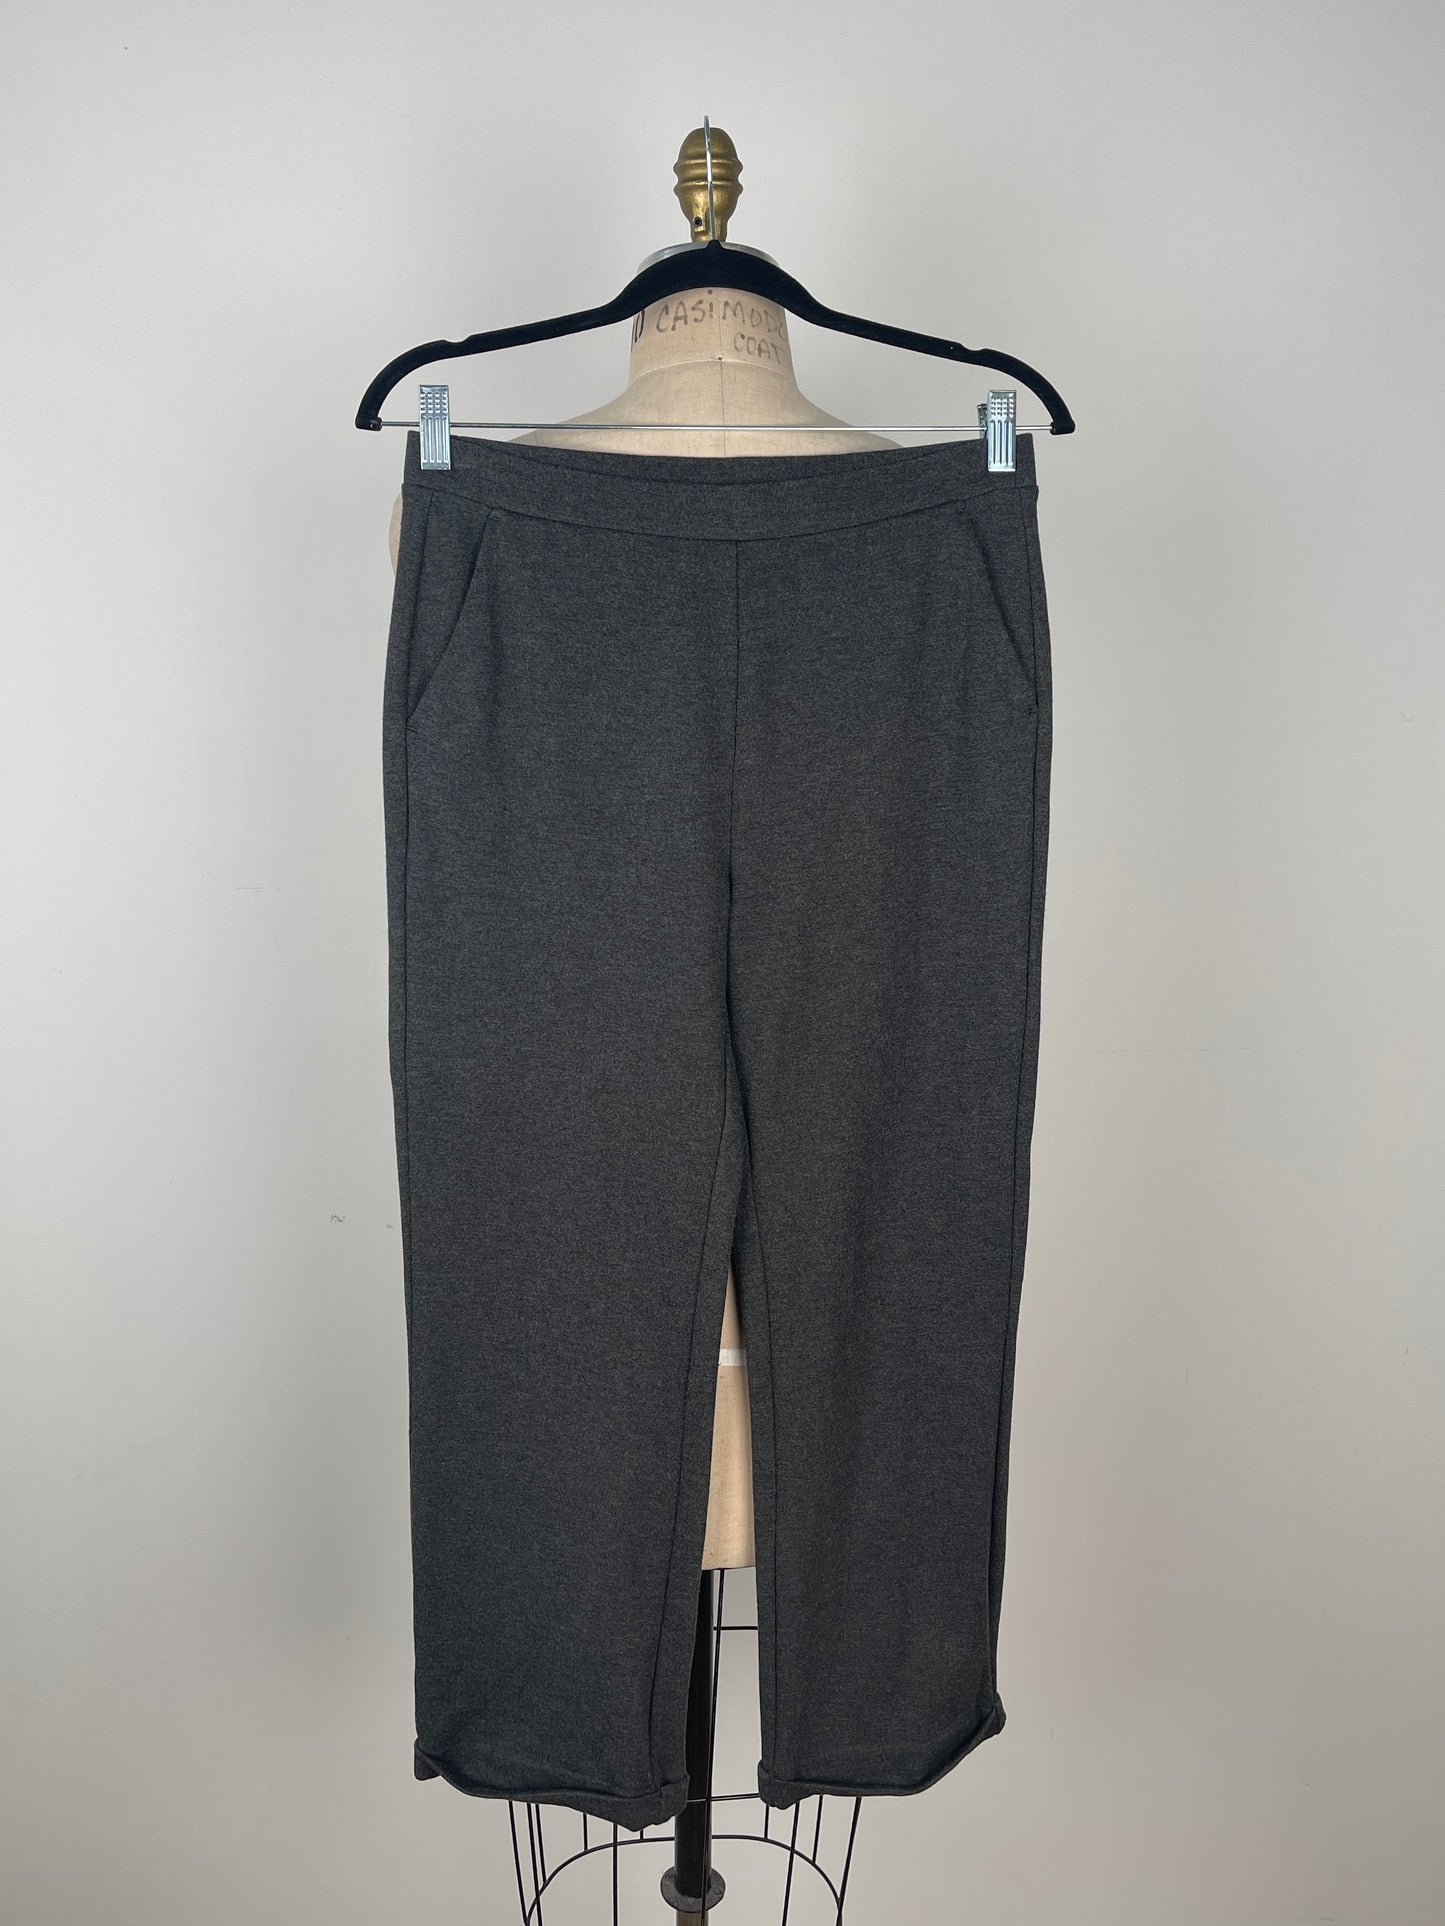 Pantalon en tricot extensible anthracite à taille élastique (S)